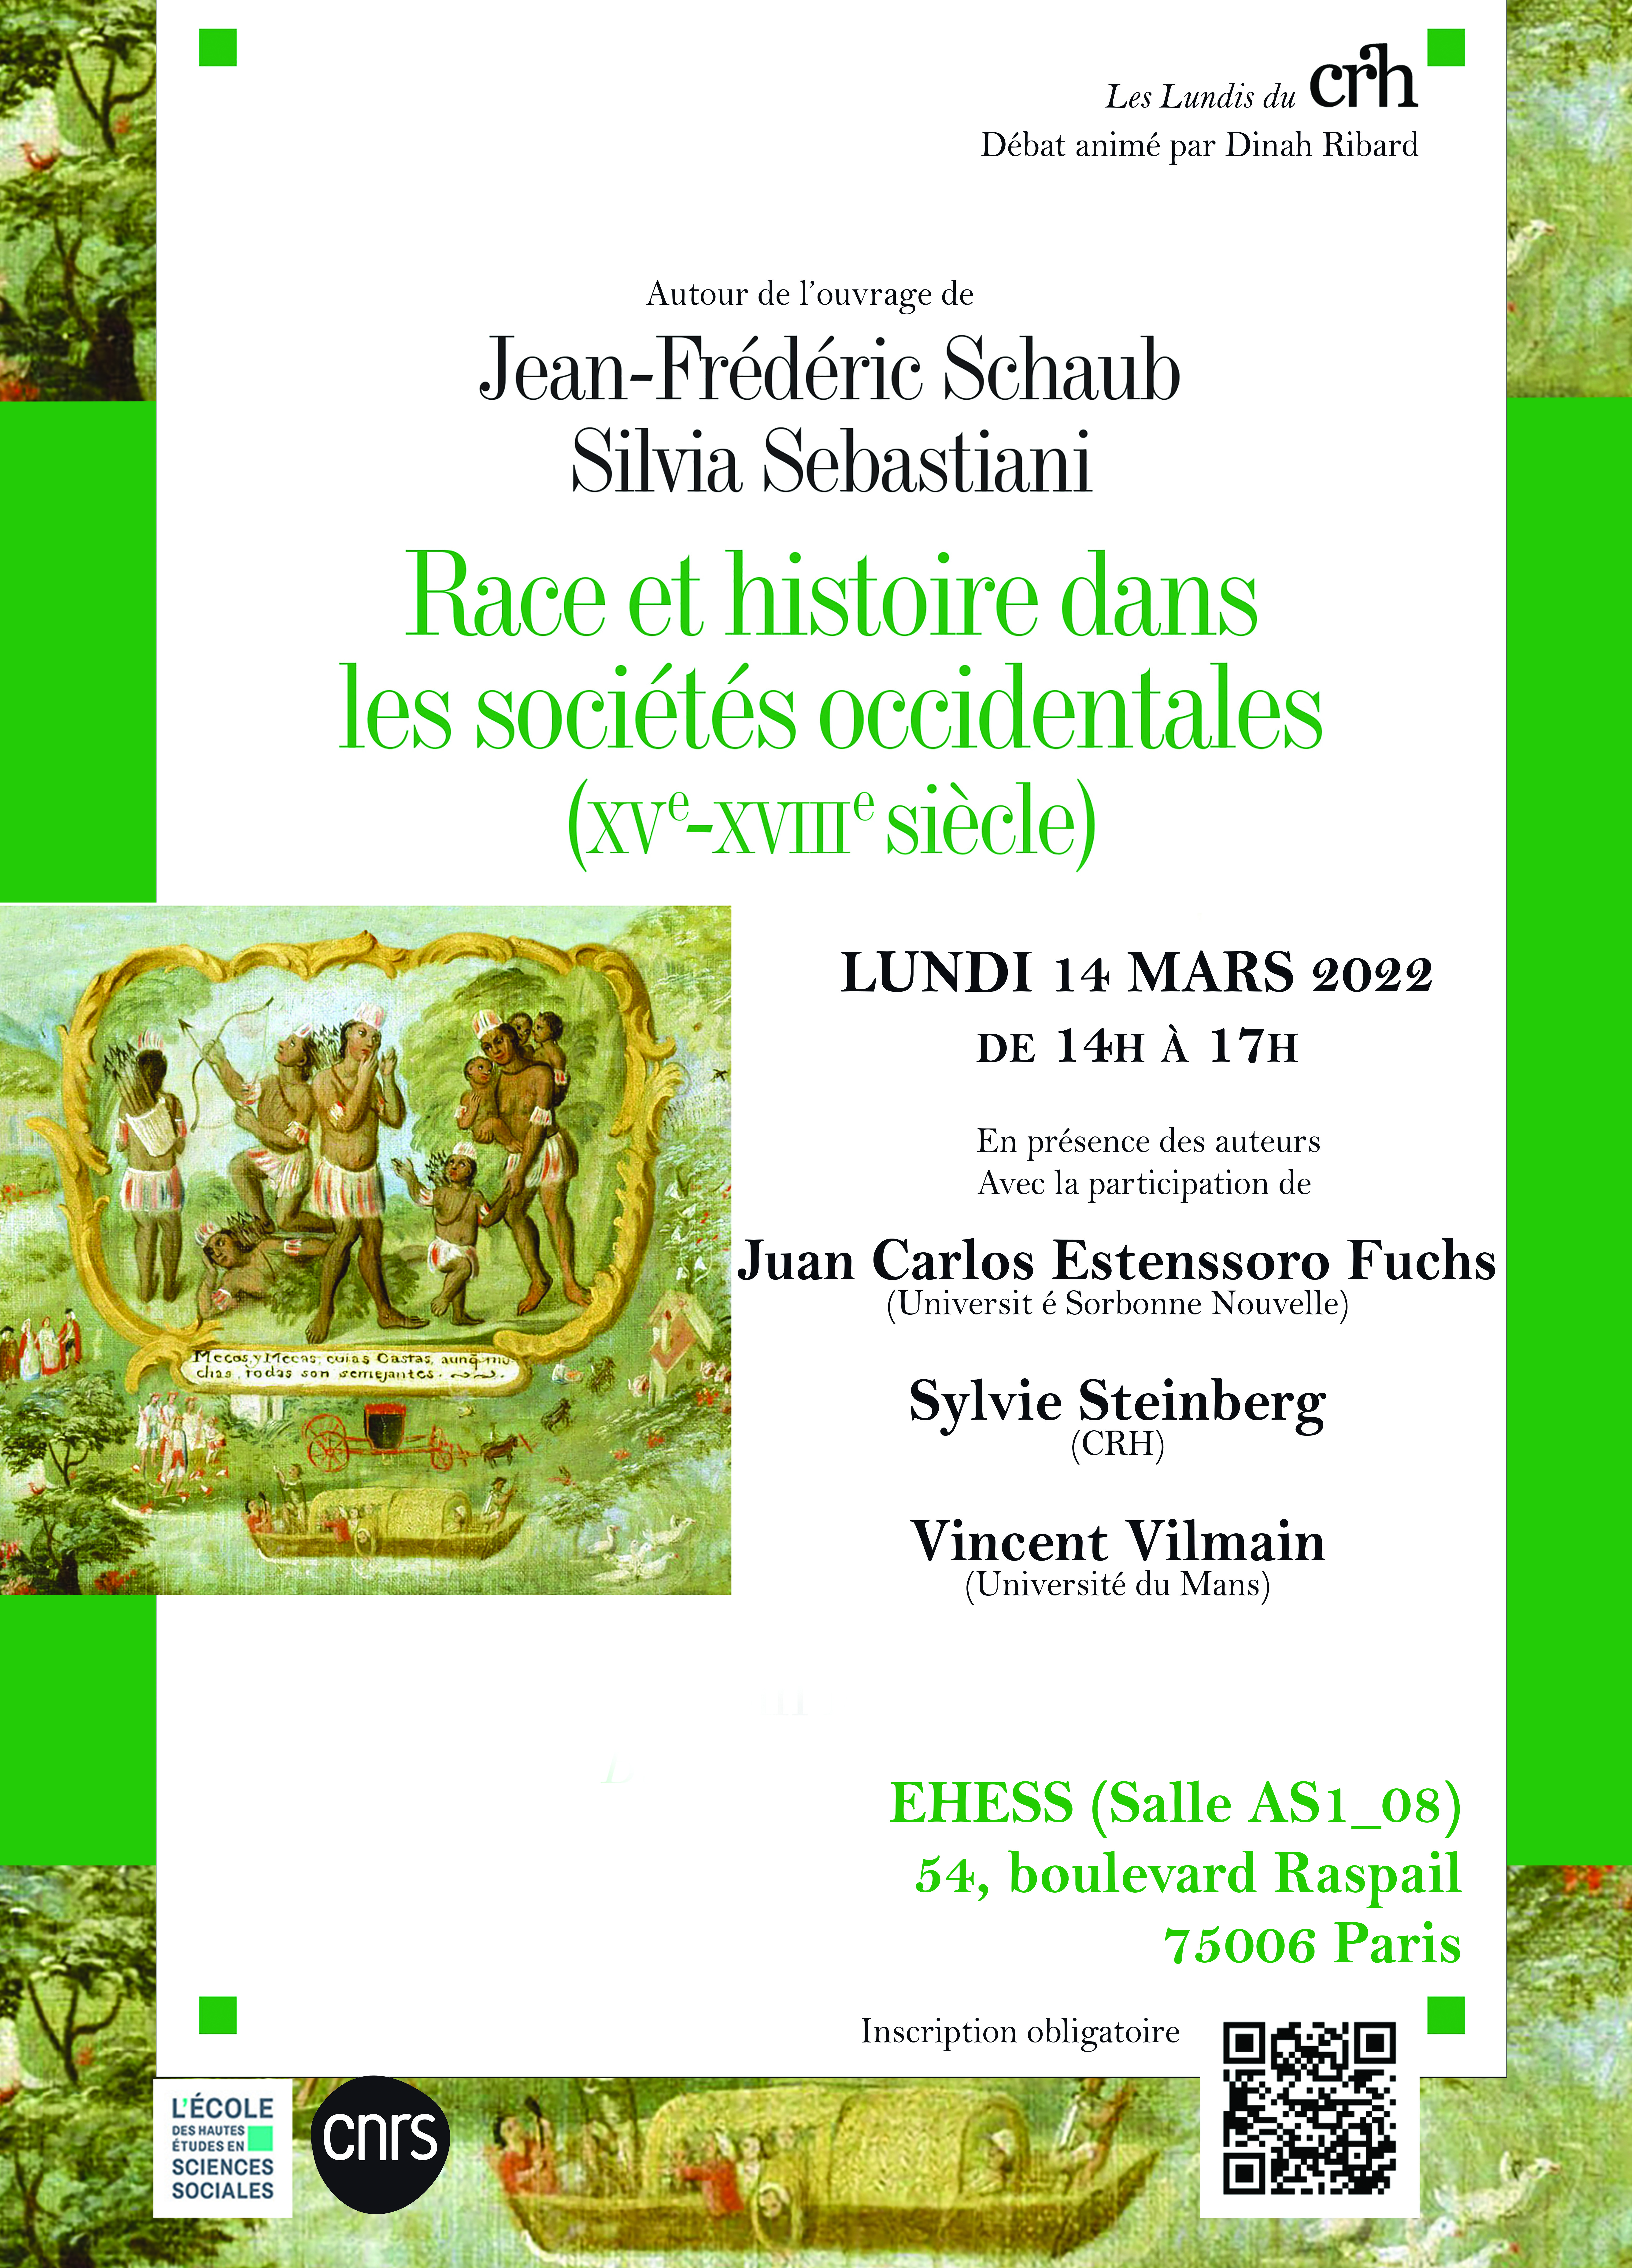 Autour de l'ouvrage de Jean-Frédéric Schaub et Silvia Sebastiani, Race et histoire dans les sociétés occidentales (XVe-XVIIIe siècle)